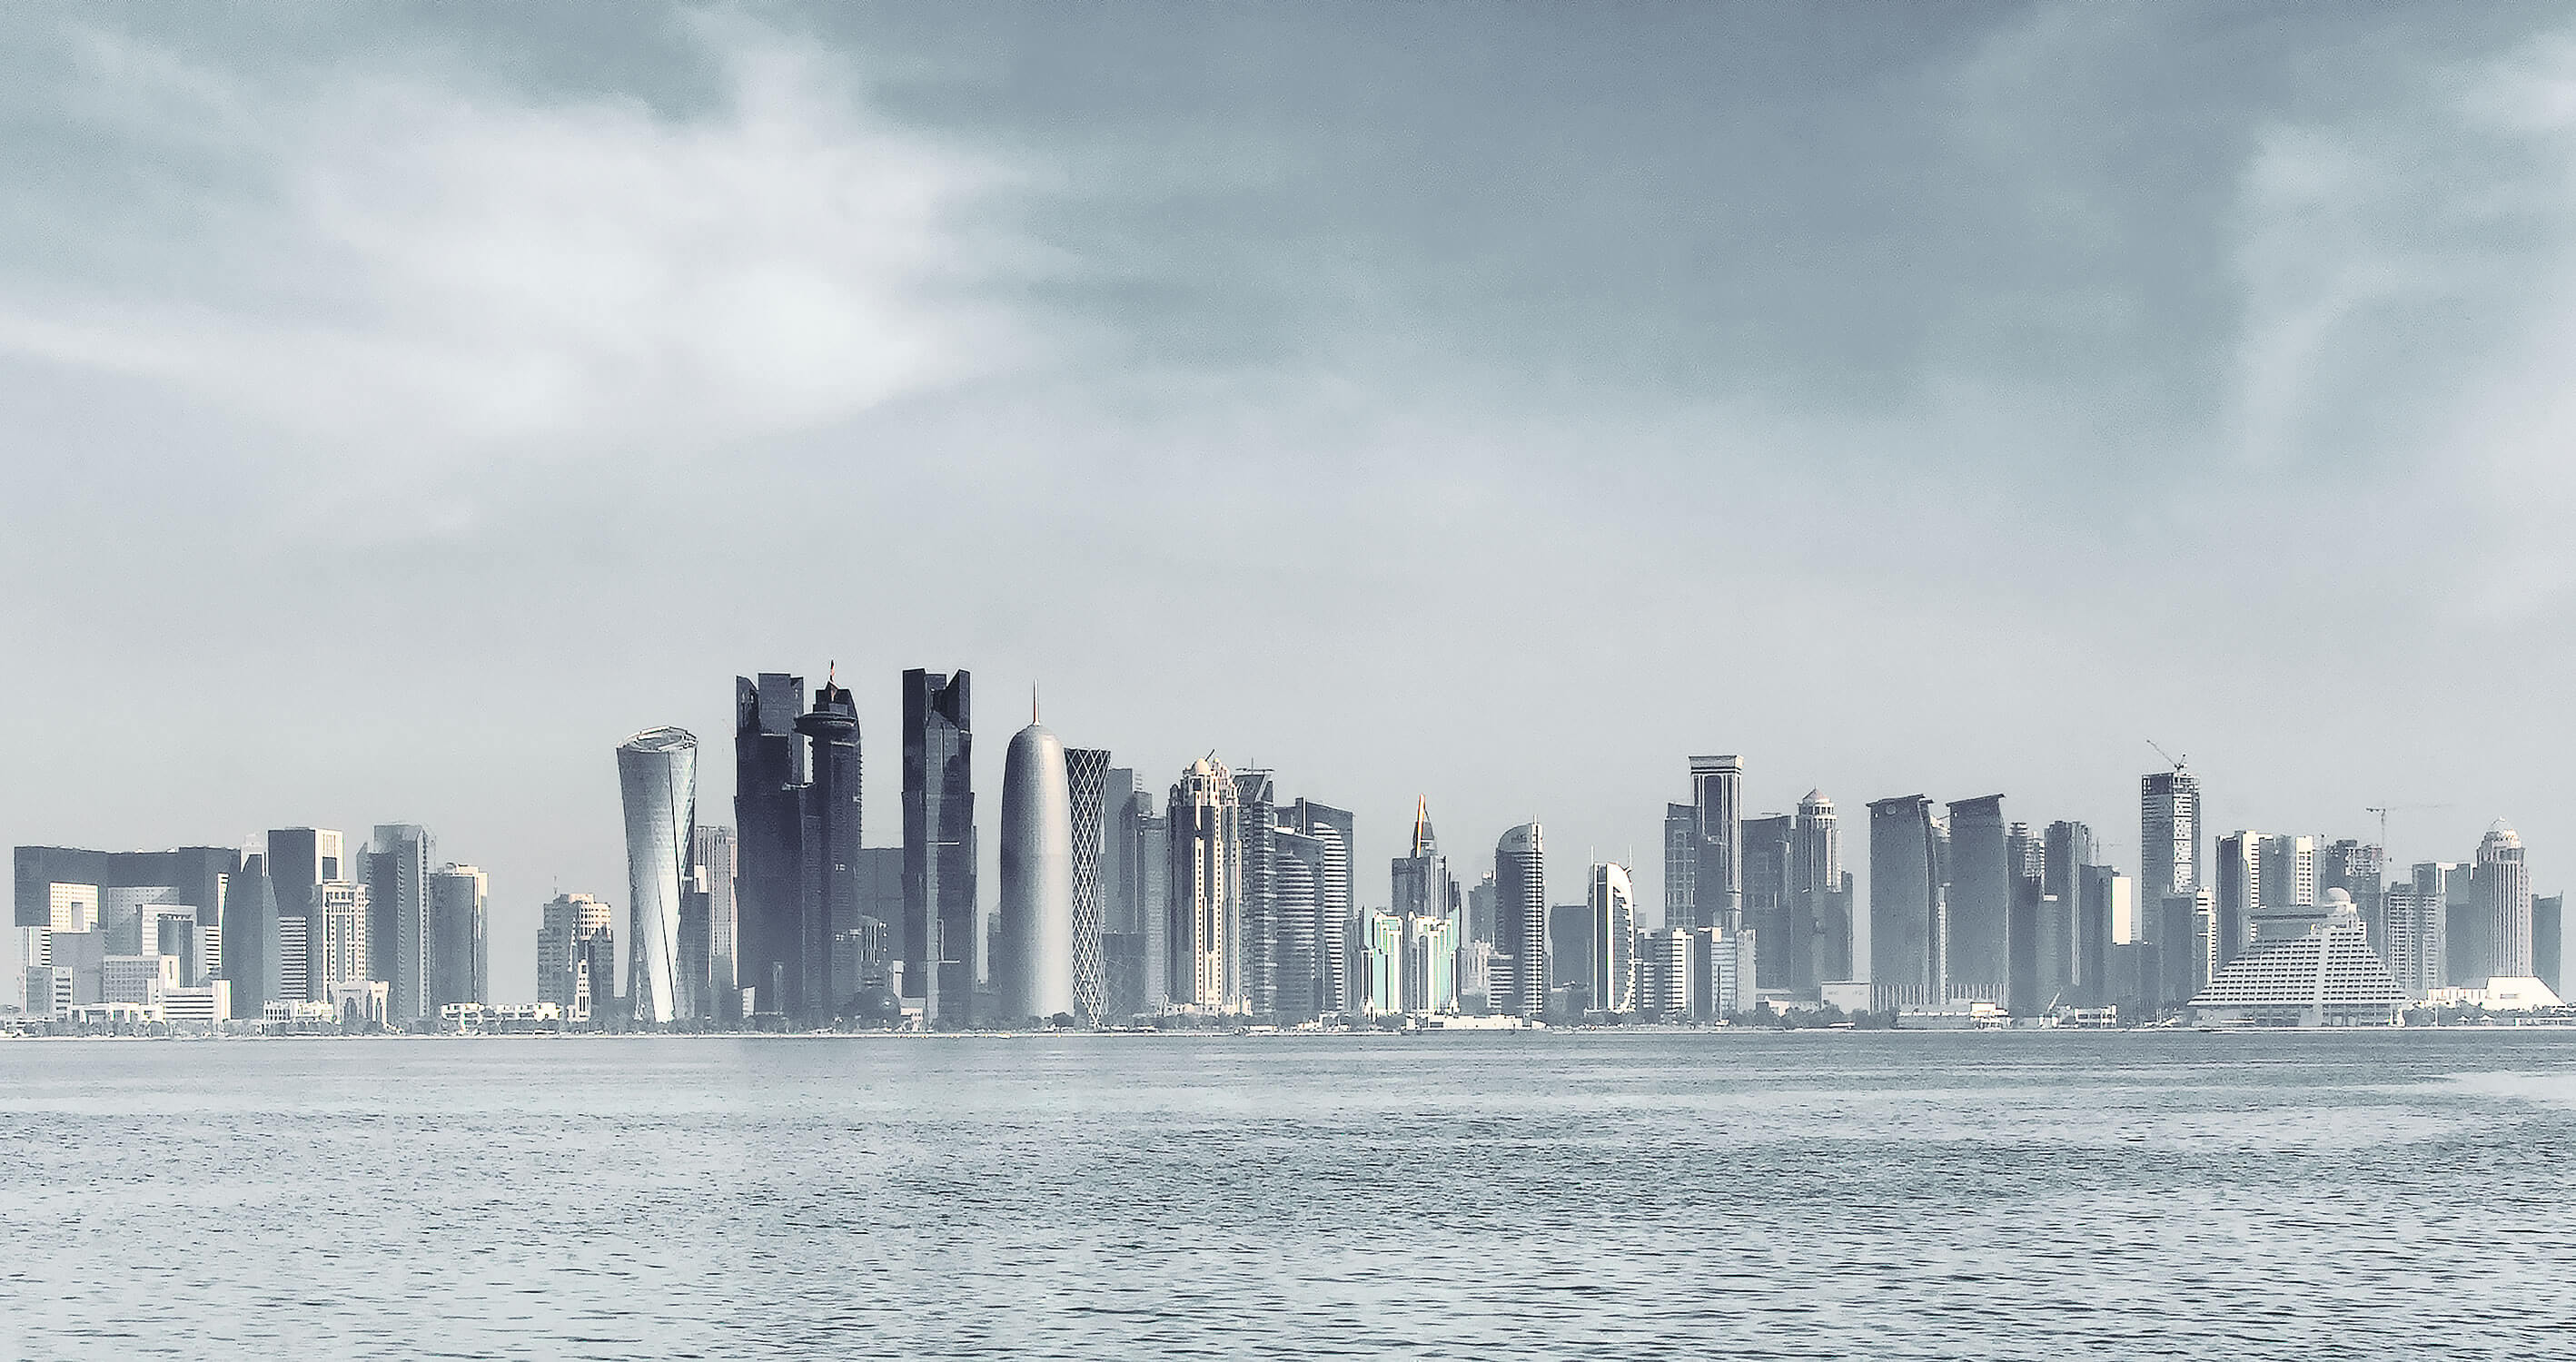 Futuristic Skyline of Doha